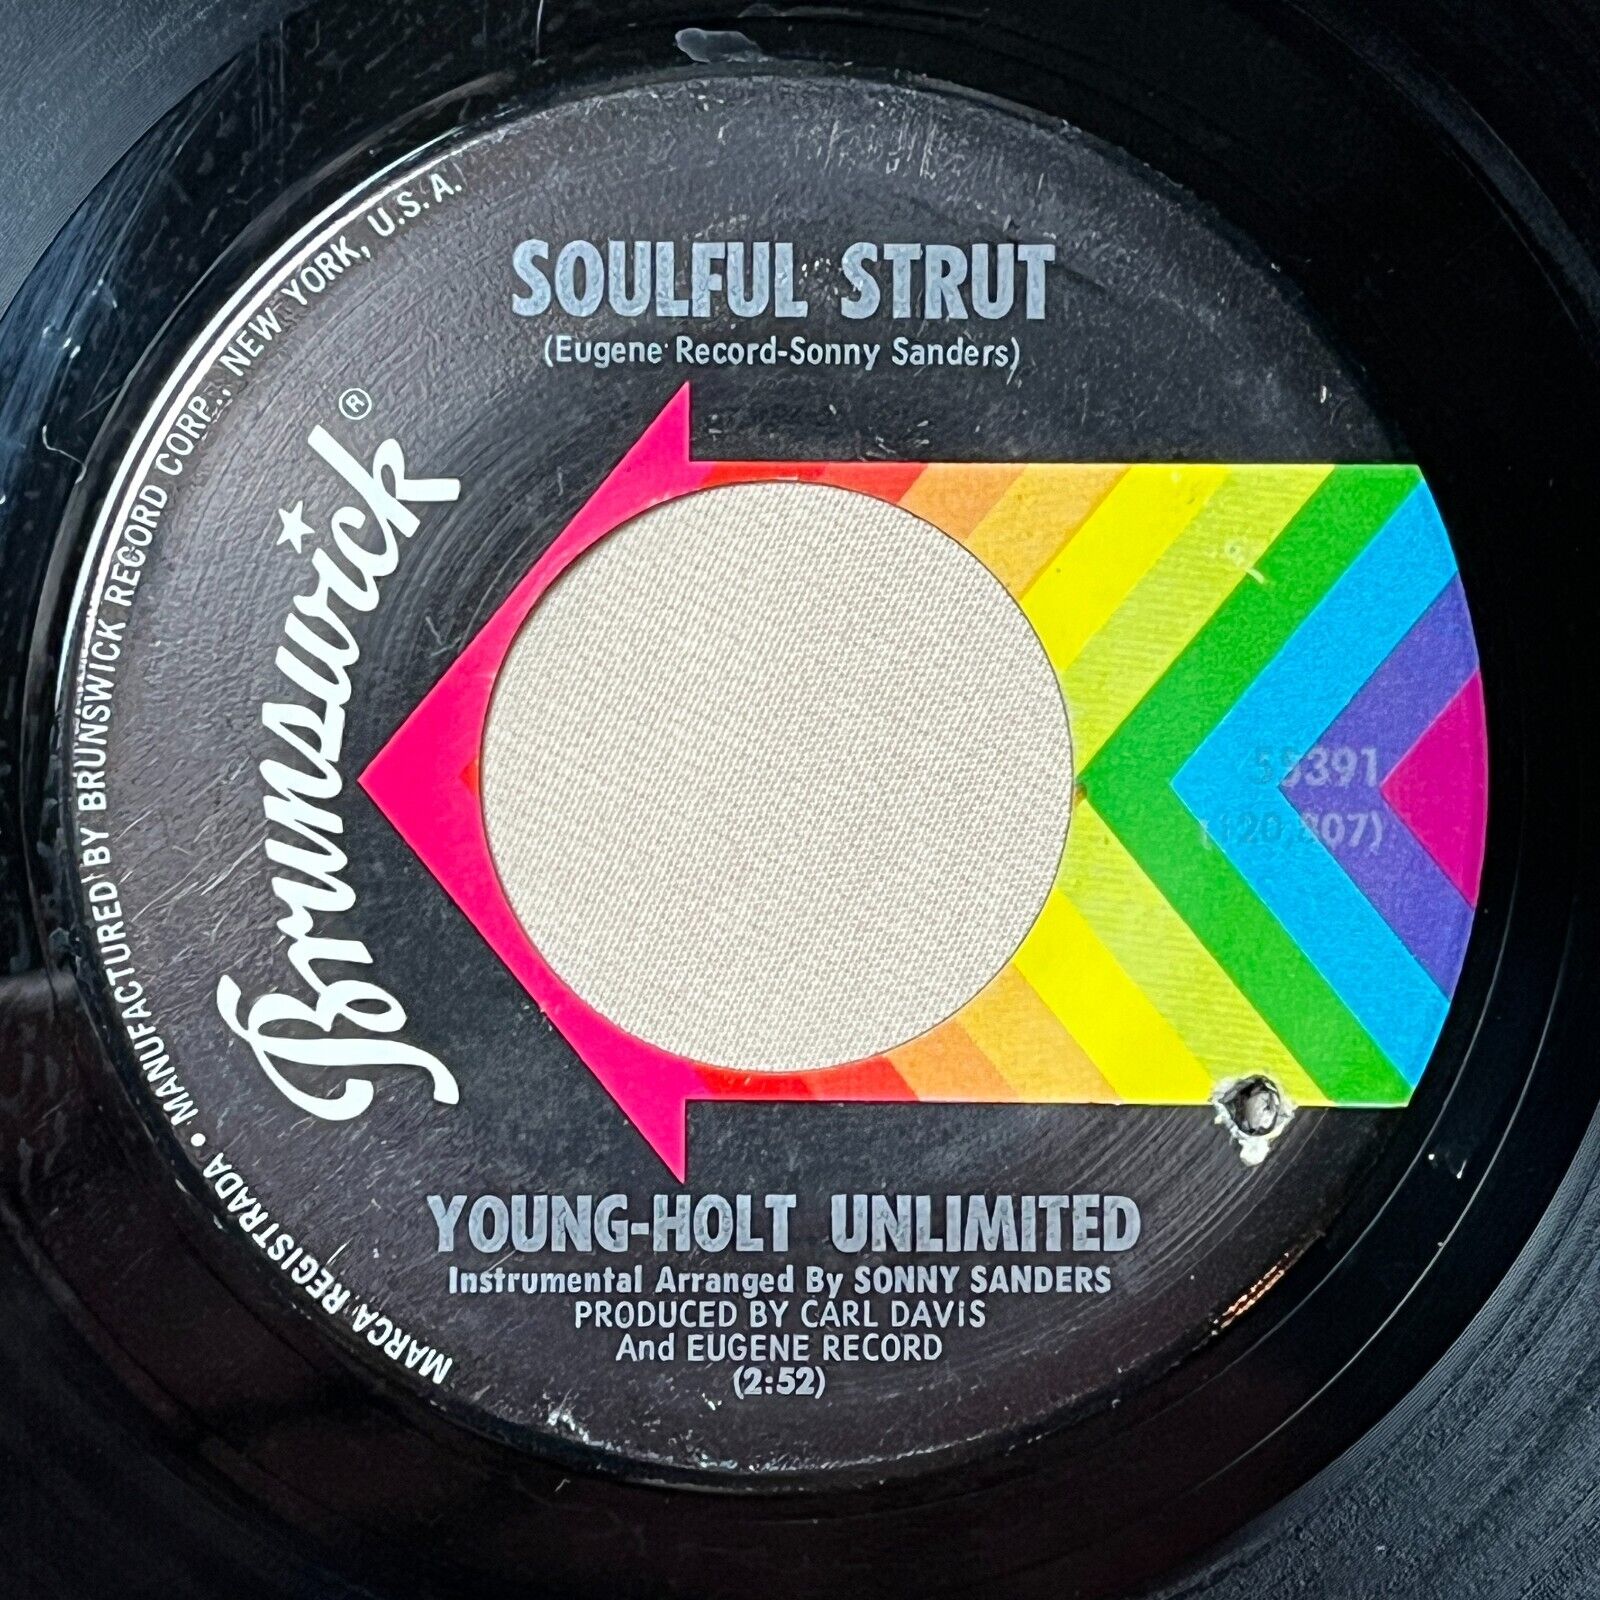 YOUNG HOLT UNLIMITED Soulful Strut 1968 Vinyl 7" Single Brunswick 55391 - VG+